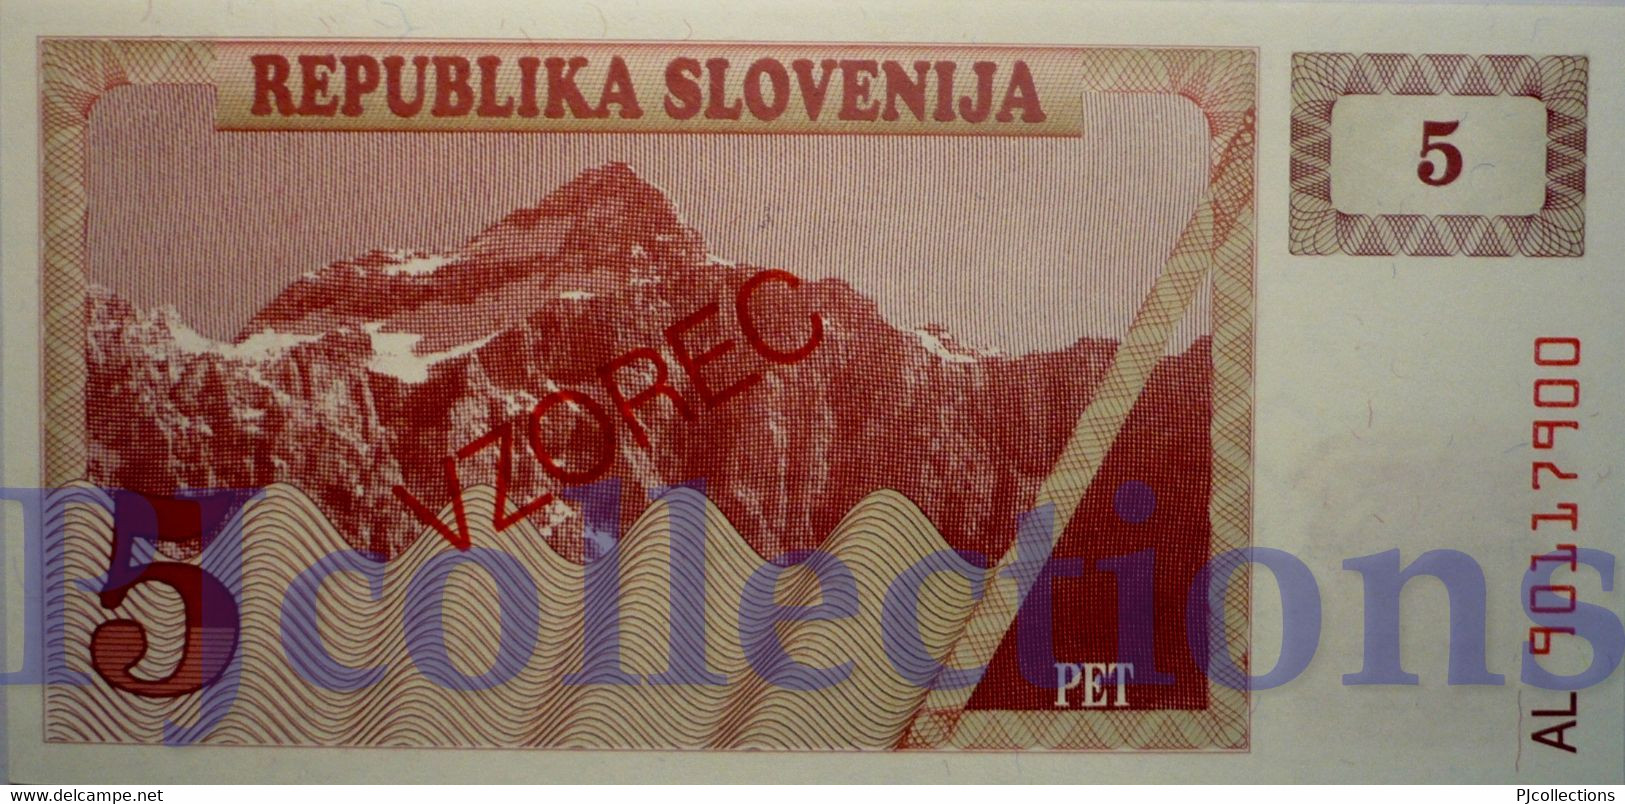 SLOVENIA 5 TOLARJEV 1990 PICK 3s1 SPECIMEN UNC - Slovénie